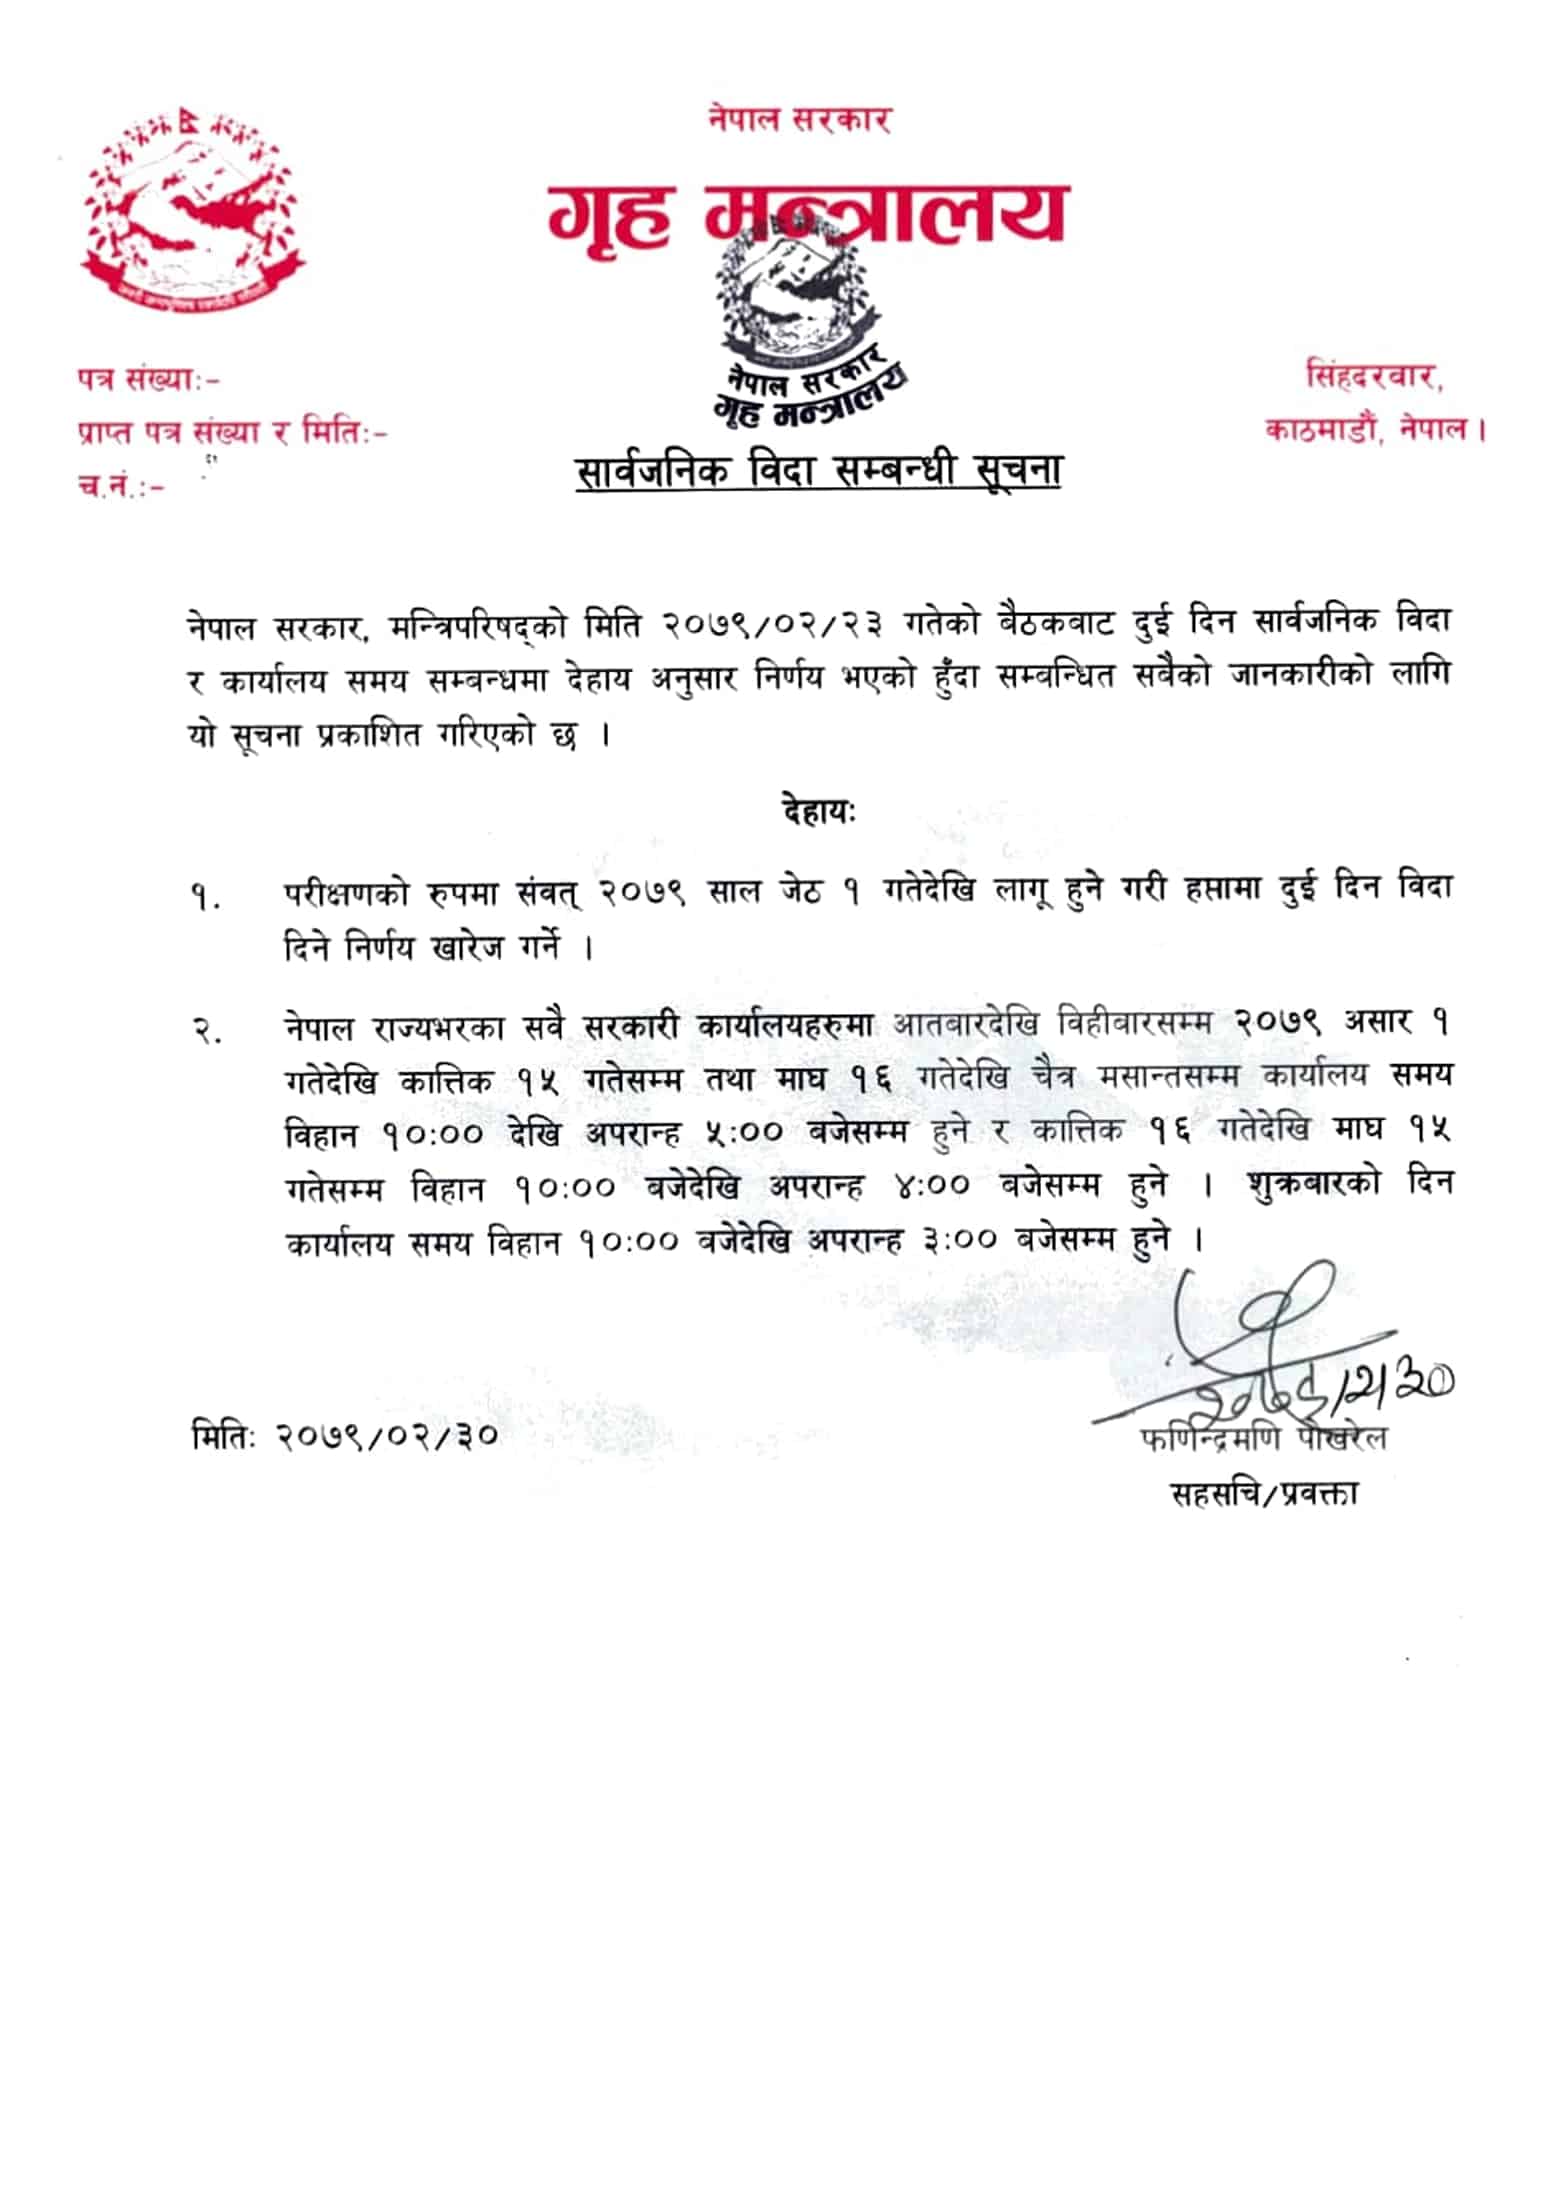 notice regarding public holiday in Nepal